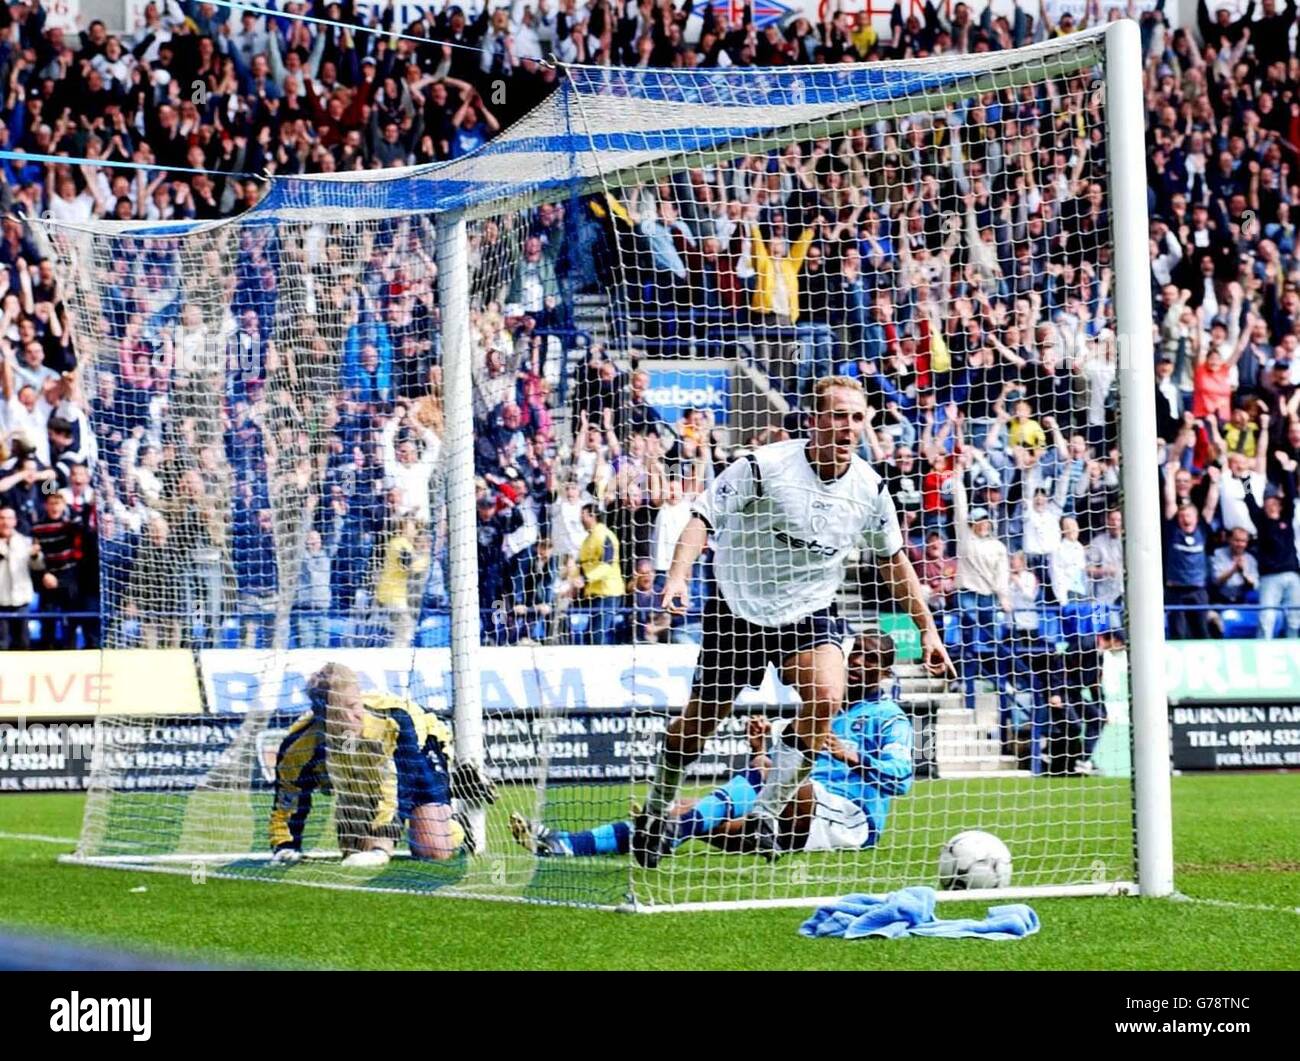 L'Henrik Pedersen di Bolton festeggia dopo aver segnato contro Manchester City durante la sua partita di premiership fa Barclaycard al Reebok Stadium di Bolton. Bolton ha vinto il gioco 2-0. Foto Stock